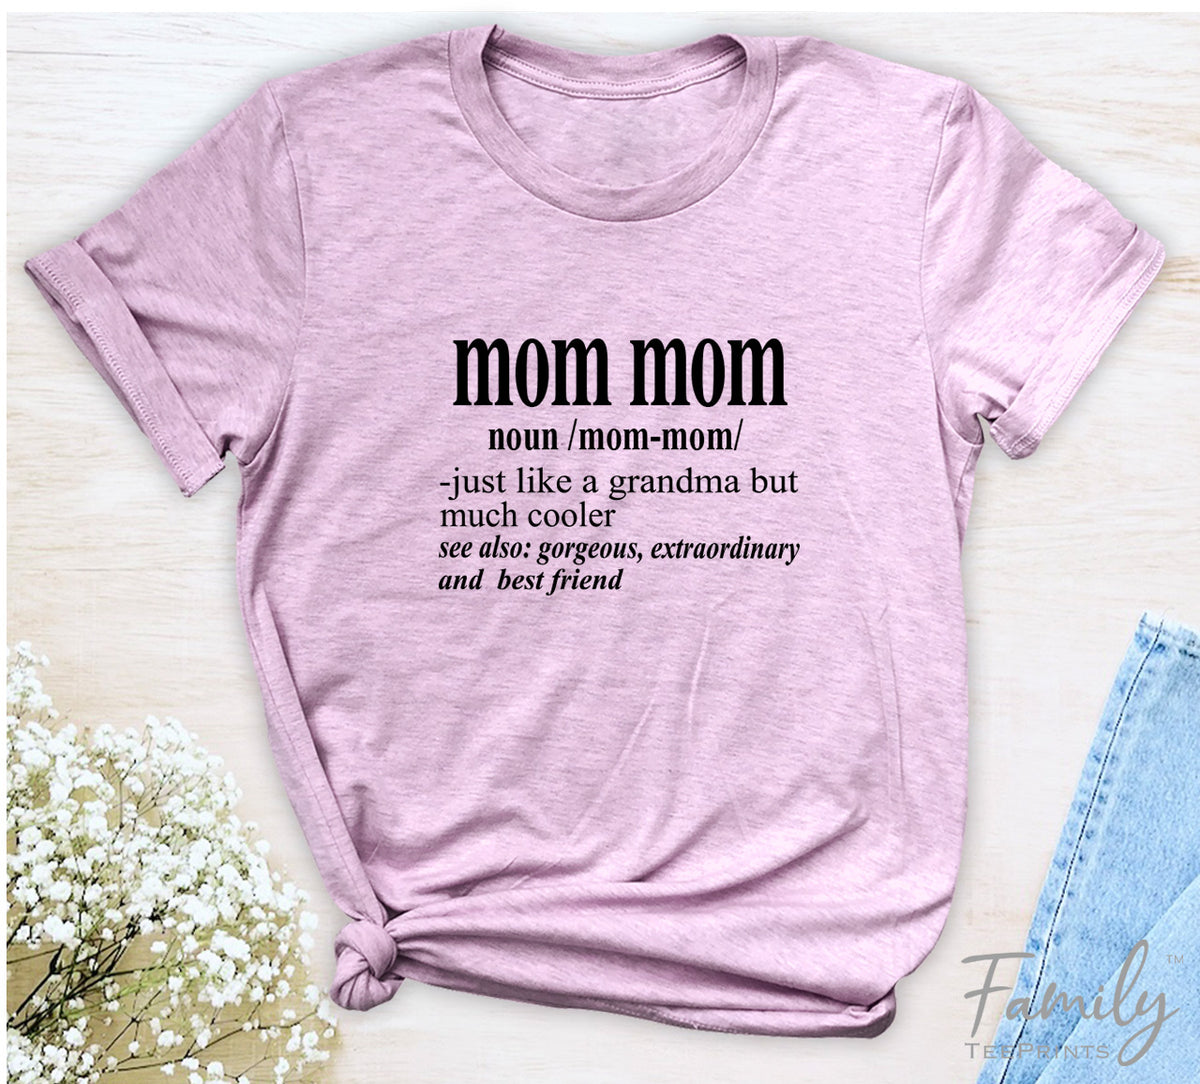 Mom Mom Noun - Unisex T-shirt - Mom Mom Shirt - Gift For Mom Mom